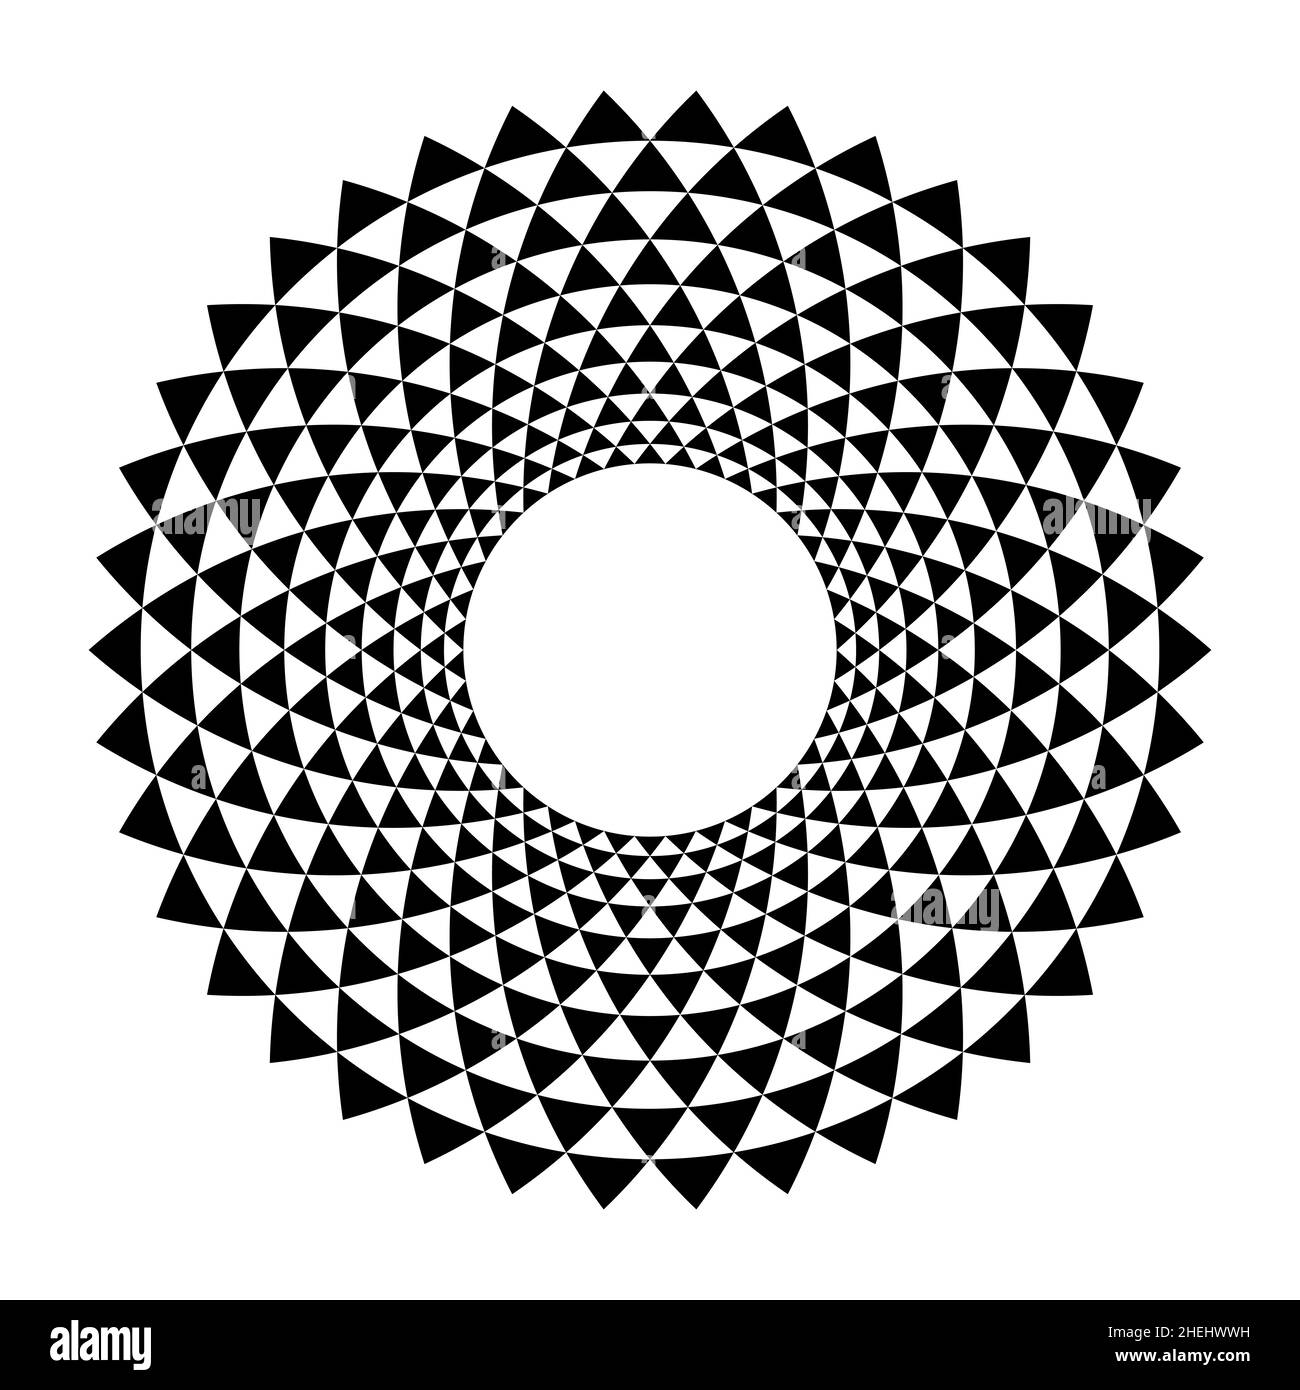 Zone circulaire avec répétition triangulaire.Cadre circulaire, en spirale comme les triangles disposés.Bordure ronde décorative. Banque D'Images